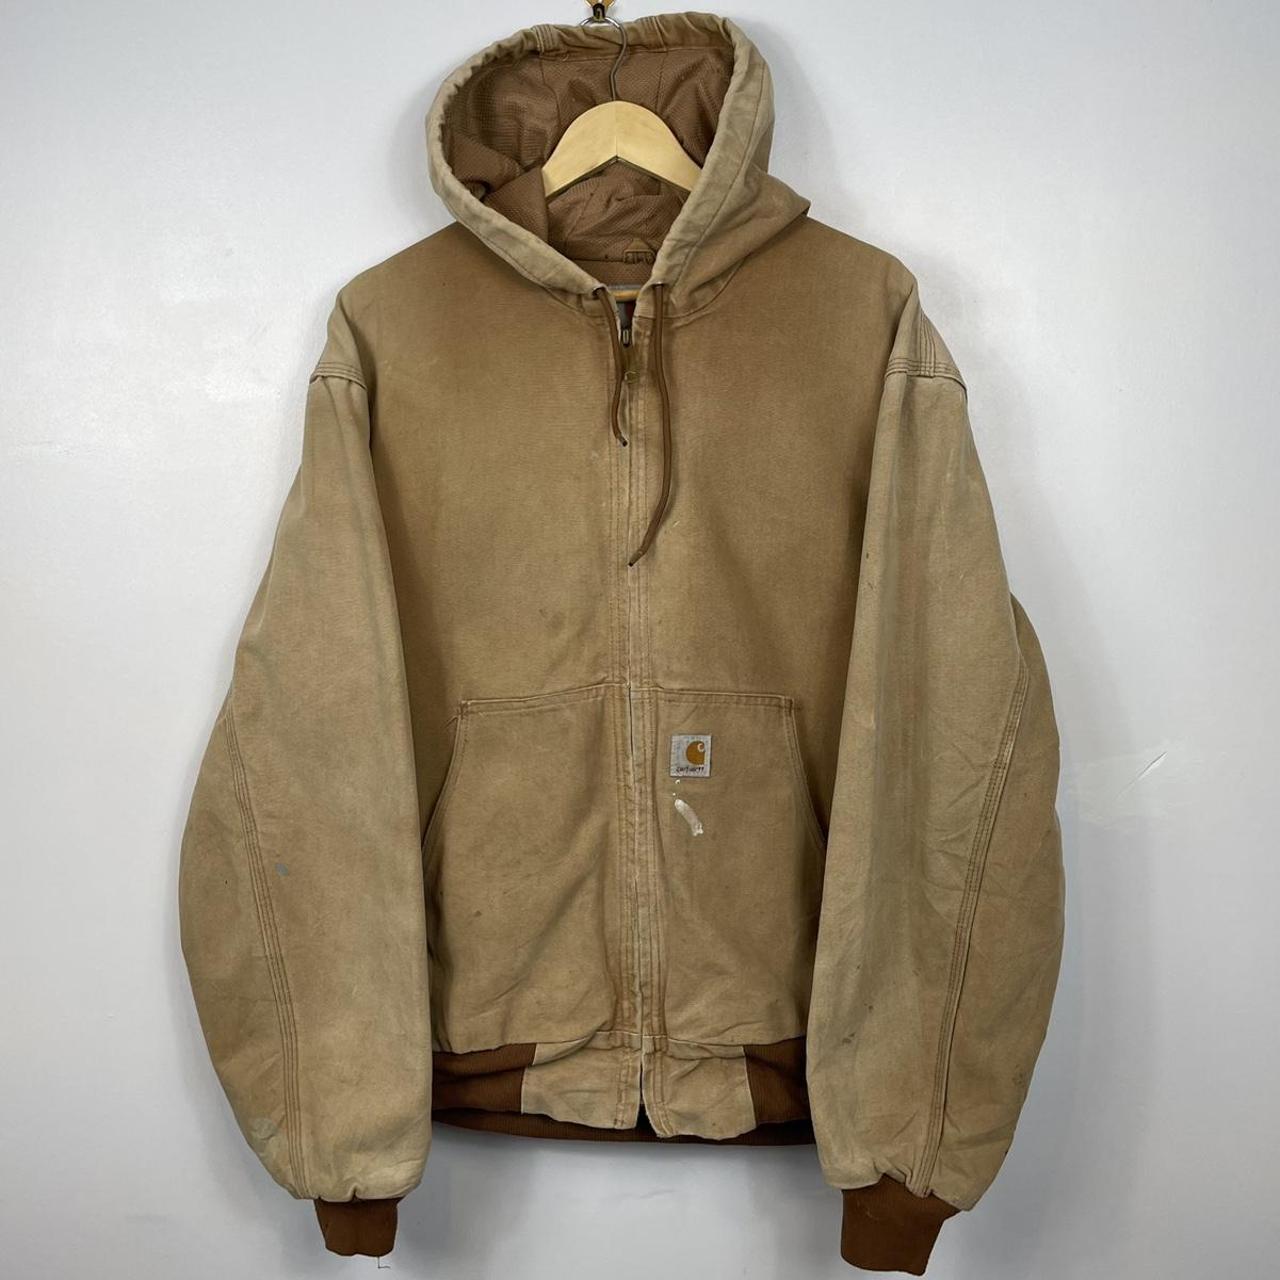 Vintage Carhartt Tan/Beige Jacket, Hooded, Made in... - Depop